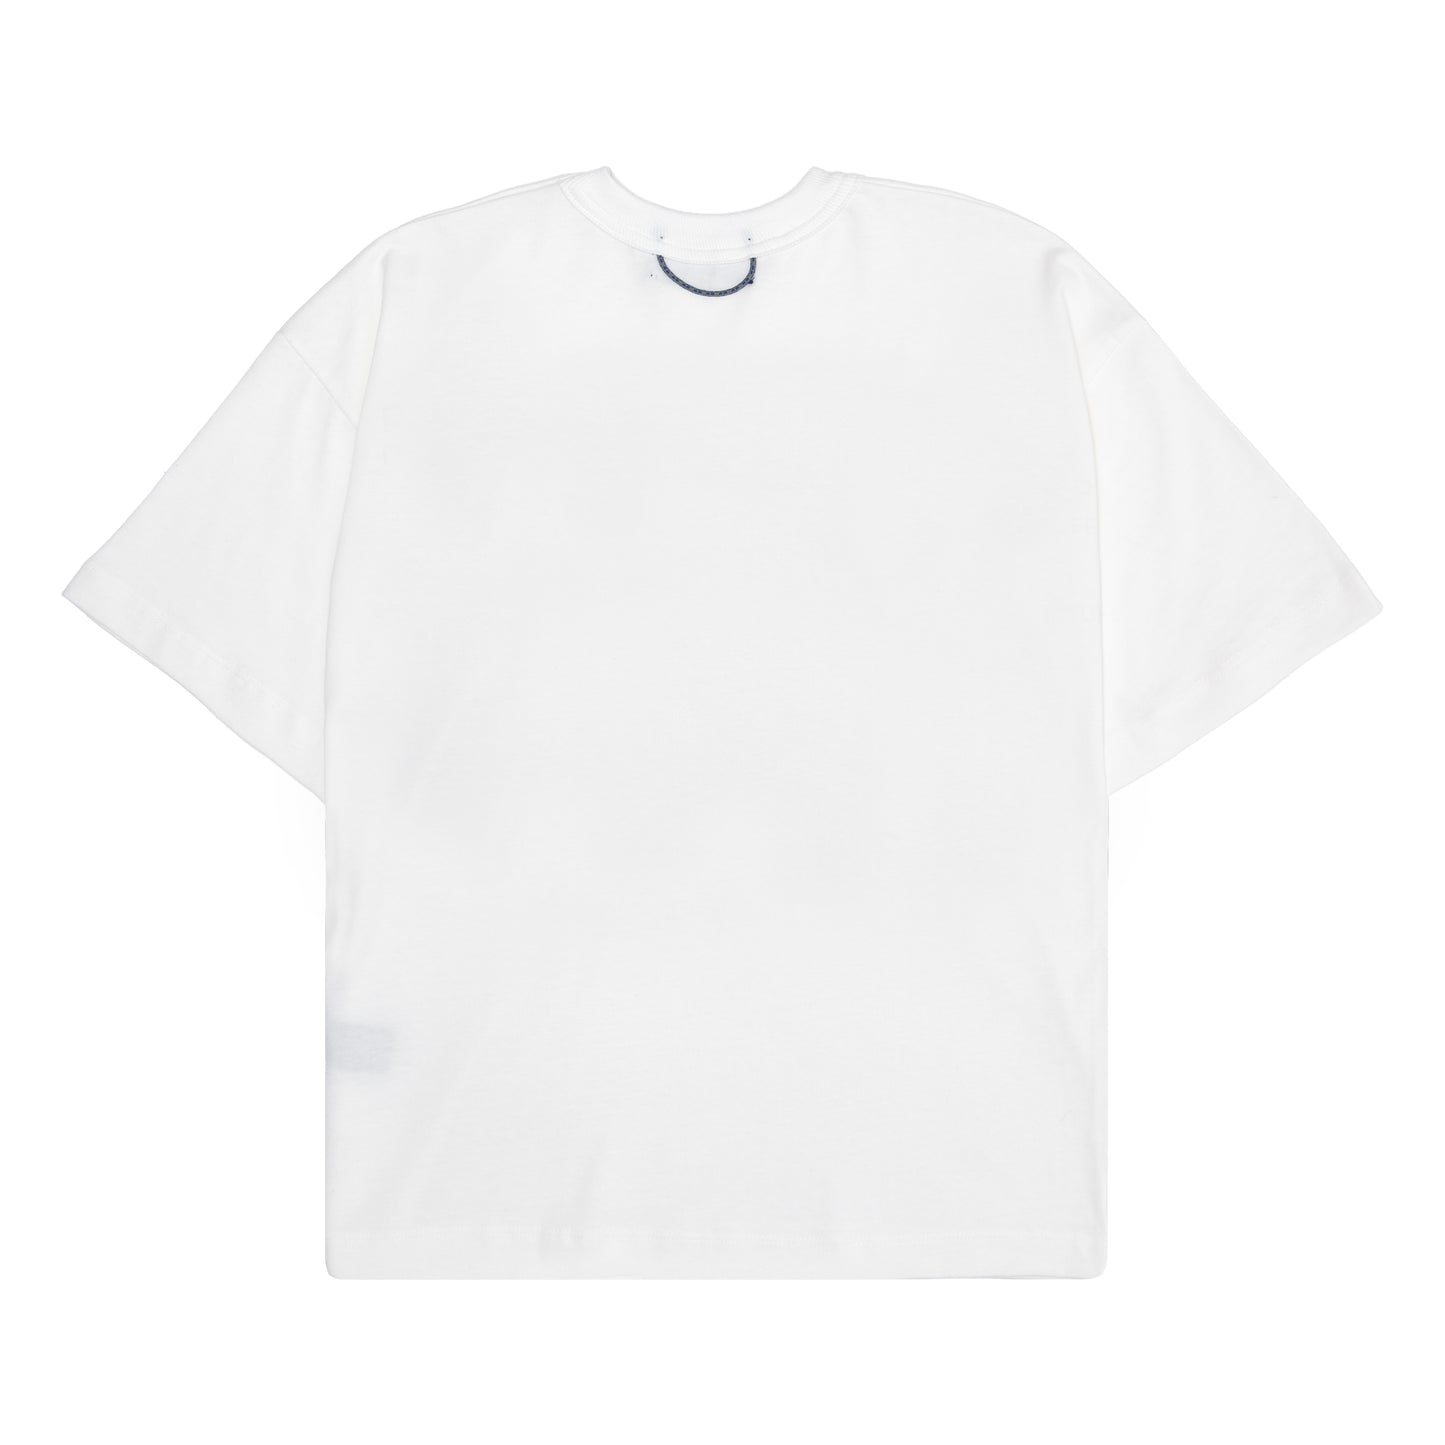 QUADRO CREATIONS -  Camiseta Understitch Off White